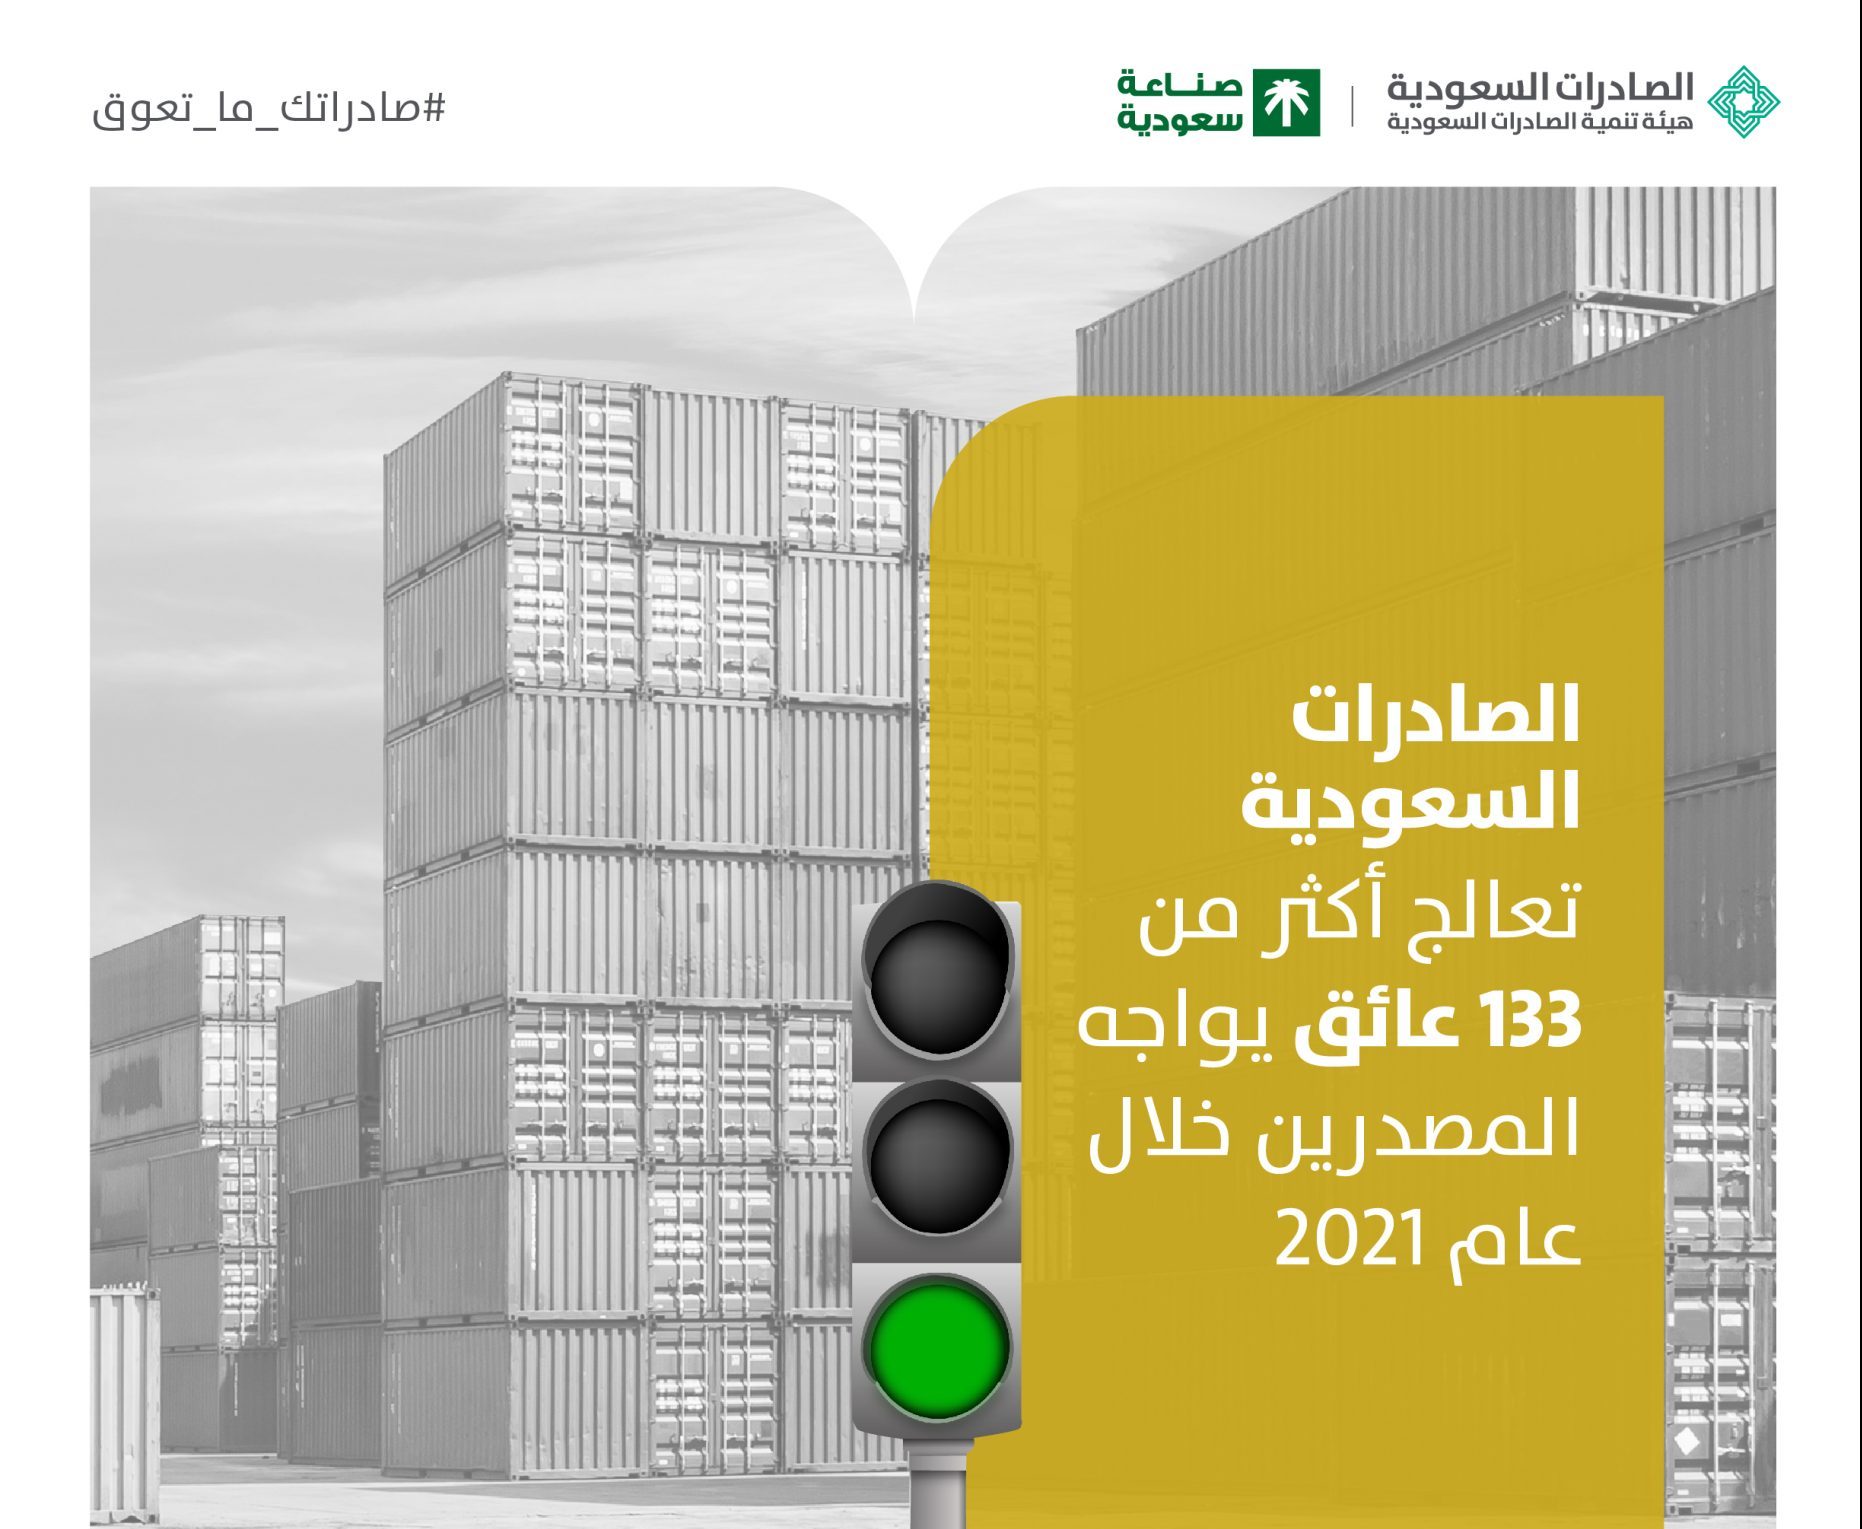 الصادرات السعودية: عالجنا 133 عائقًا تواجه المصدرين